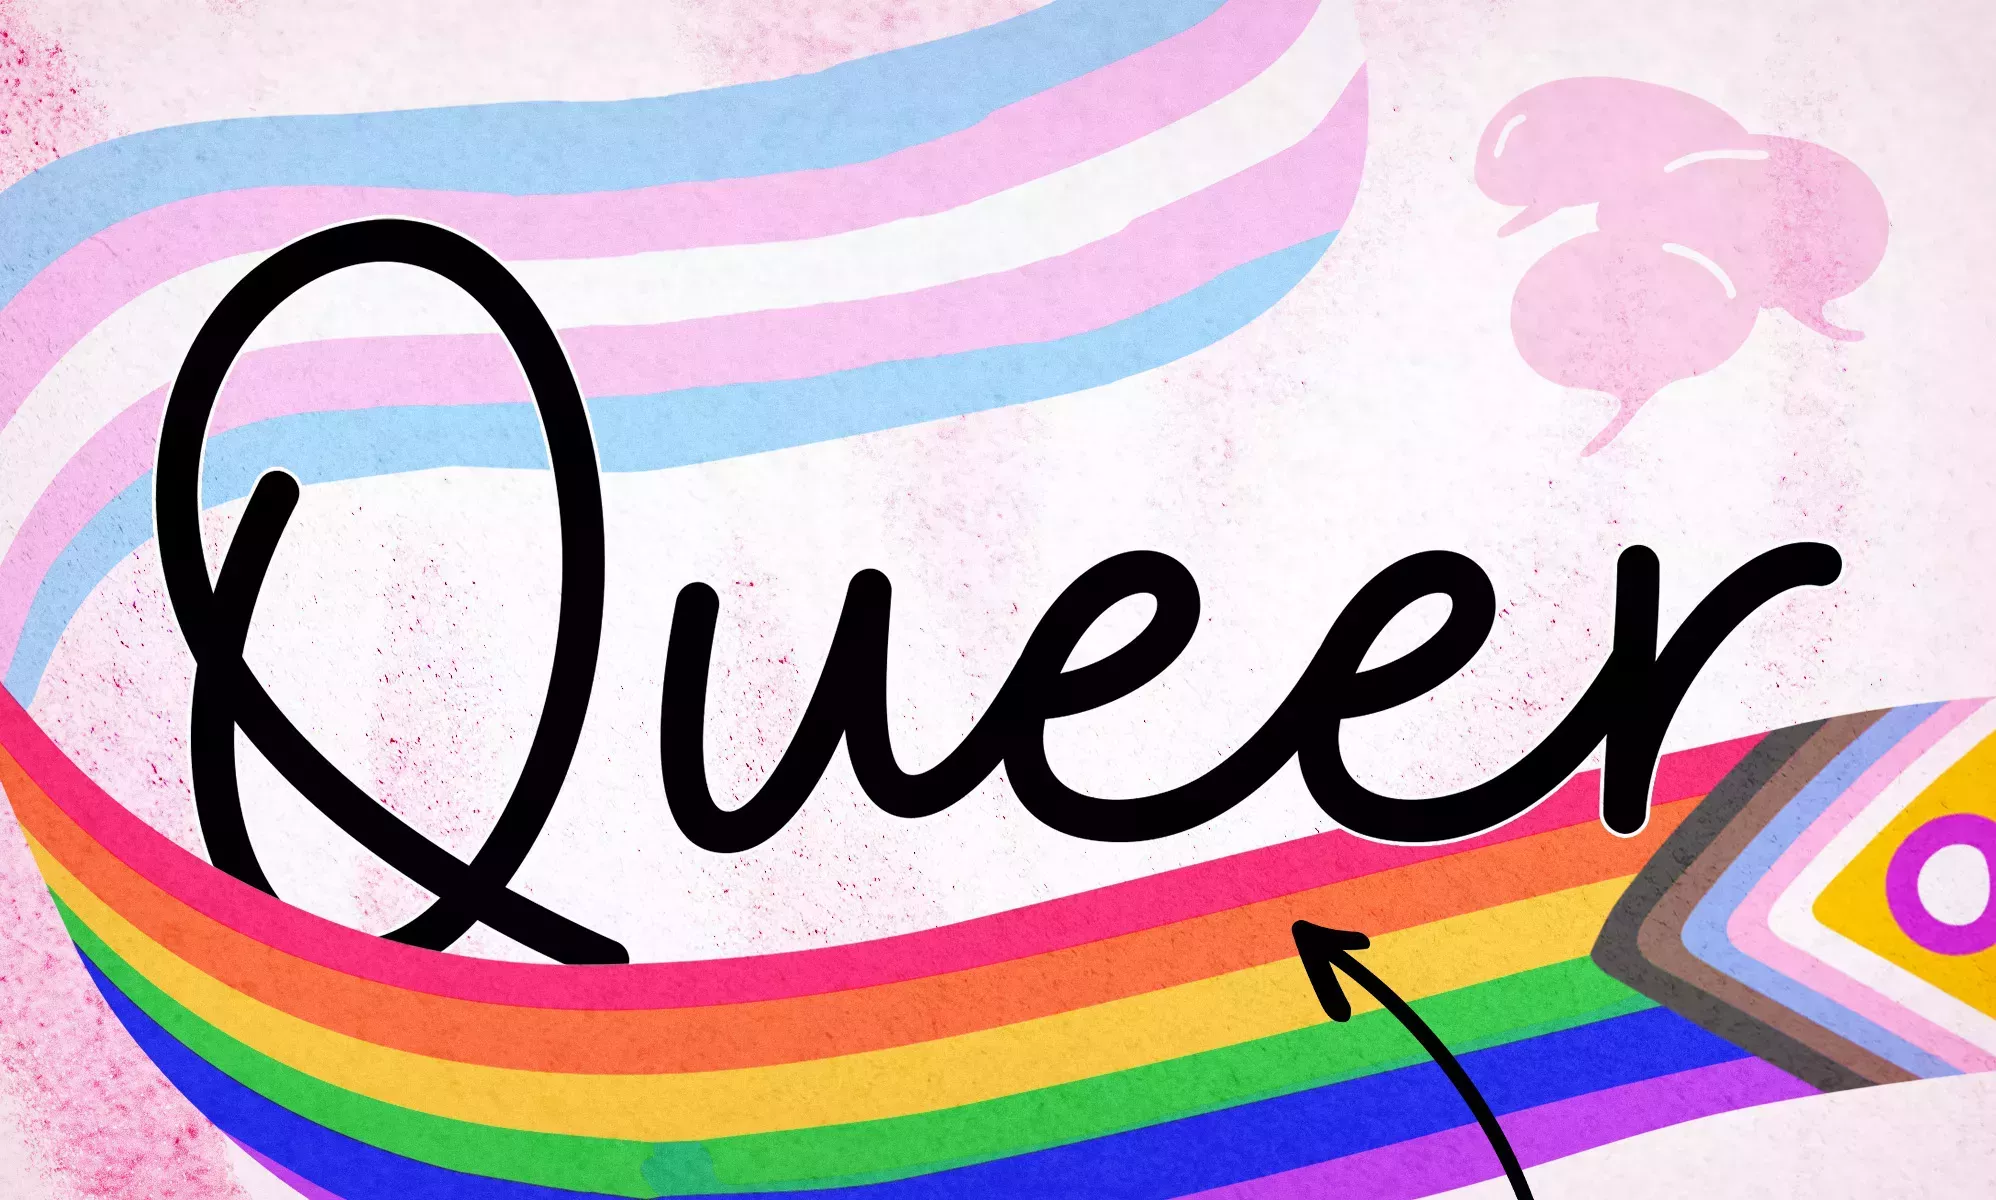 ¿Marica o gay? Por qué las personas LGBTQ+ debaten ferozmente sobre el antiguo insulto reivindicado